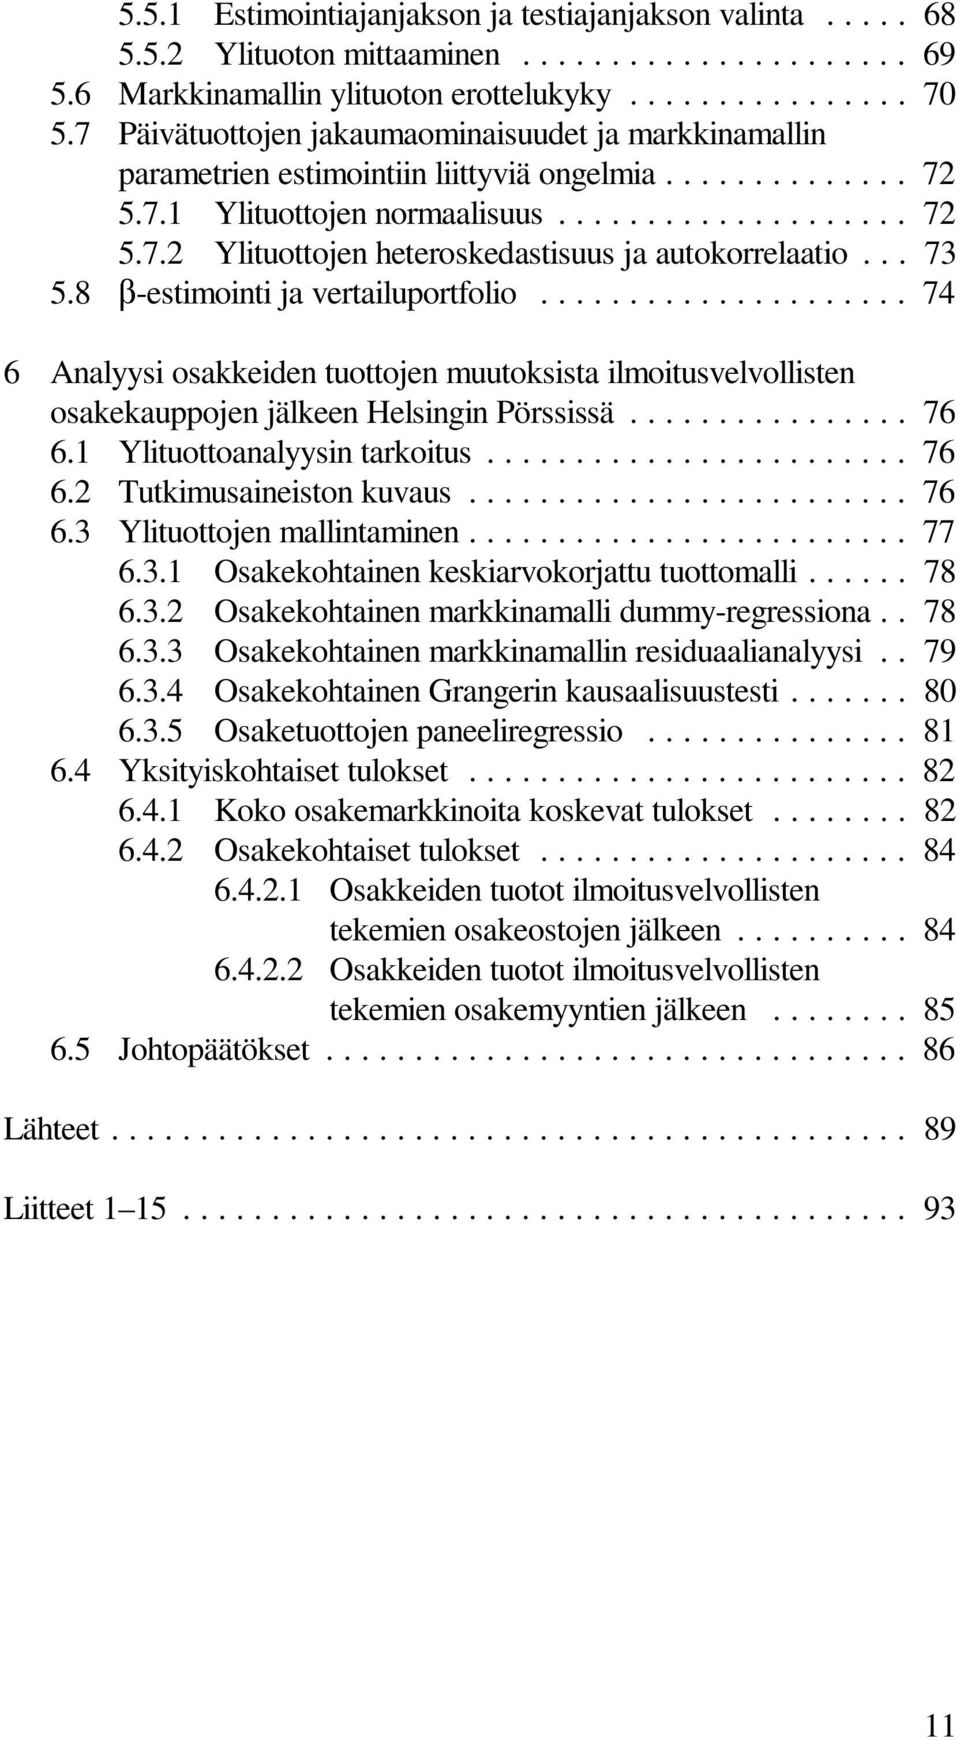 .. 73 5.8 A-estimointijavertailuportfolio... 74 6 Analyysi osakkeiden tuottojen muutoksista ilmoitusvelvollisten osakekauppojen jälkeen Helsingin Pörssissä... 76 6.1 Ylituottoanalyysintarkoitus... 76 6.2 Tutkimusaineistonkuvaus.